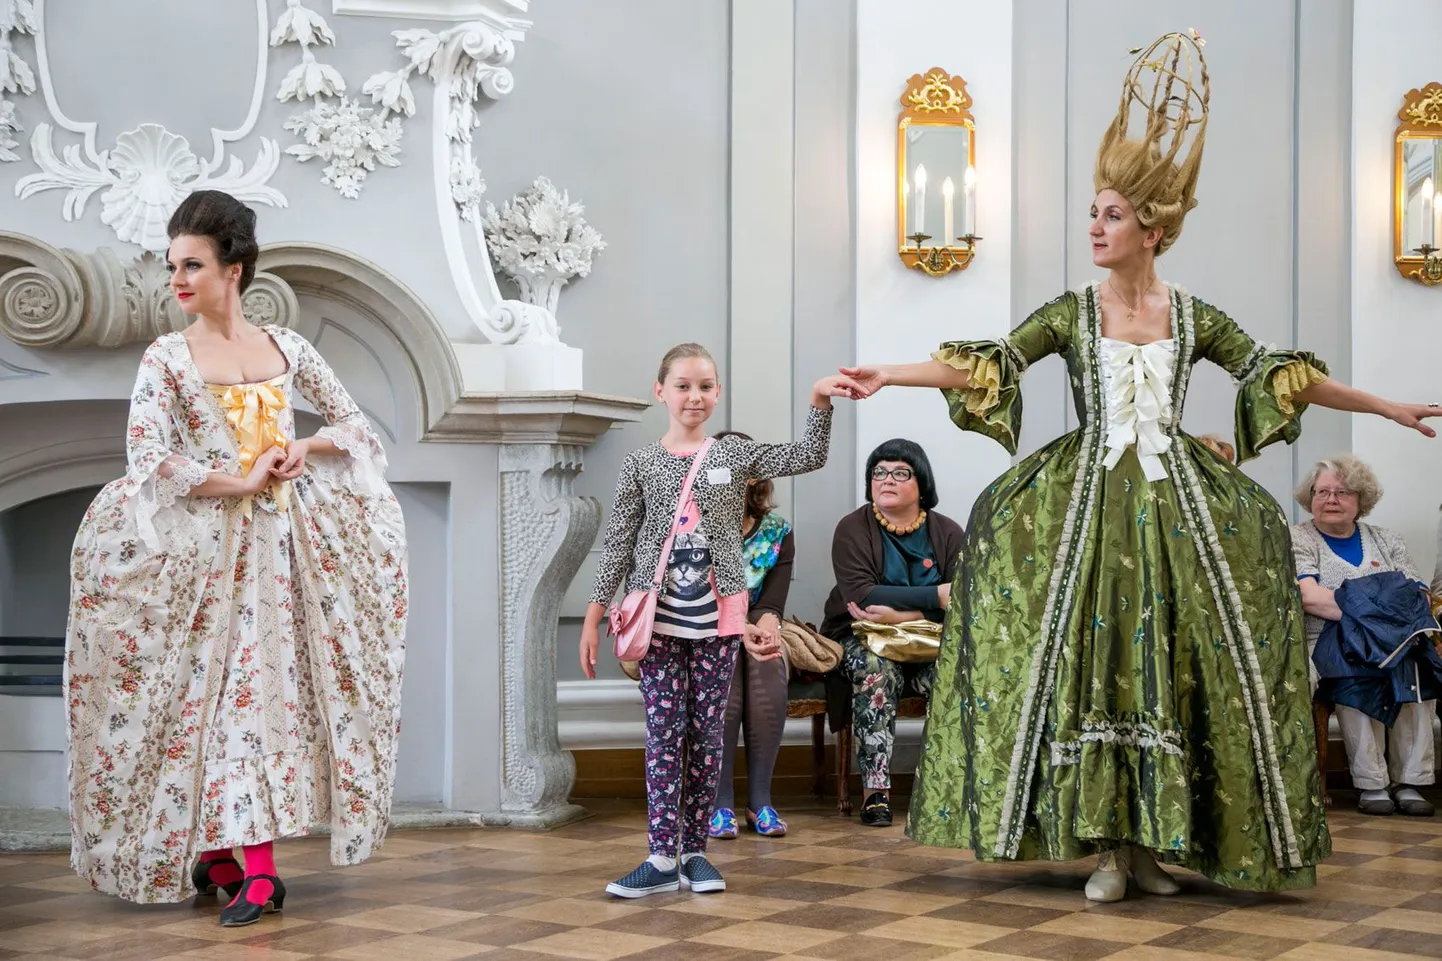 Руководитель петербургского театра исторического танца «Petit Trianon» Ярослава Бубнова (справа) приглашала всех научиться делать старинные реверансы.